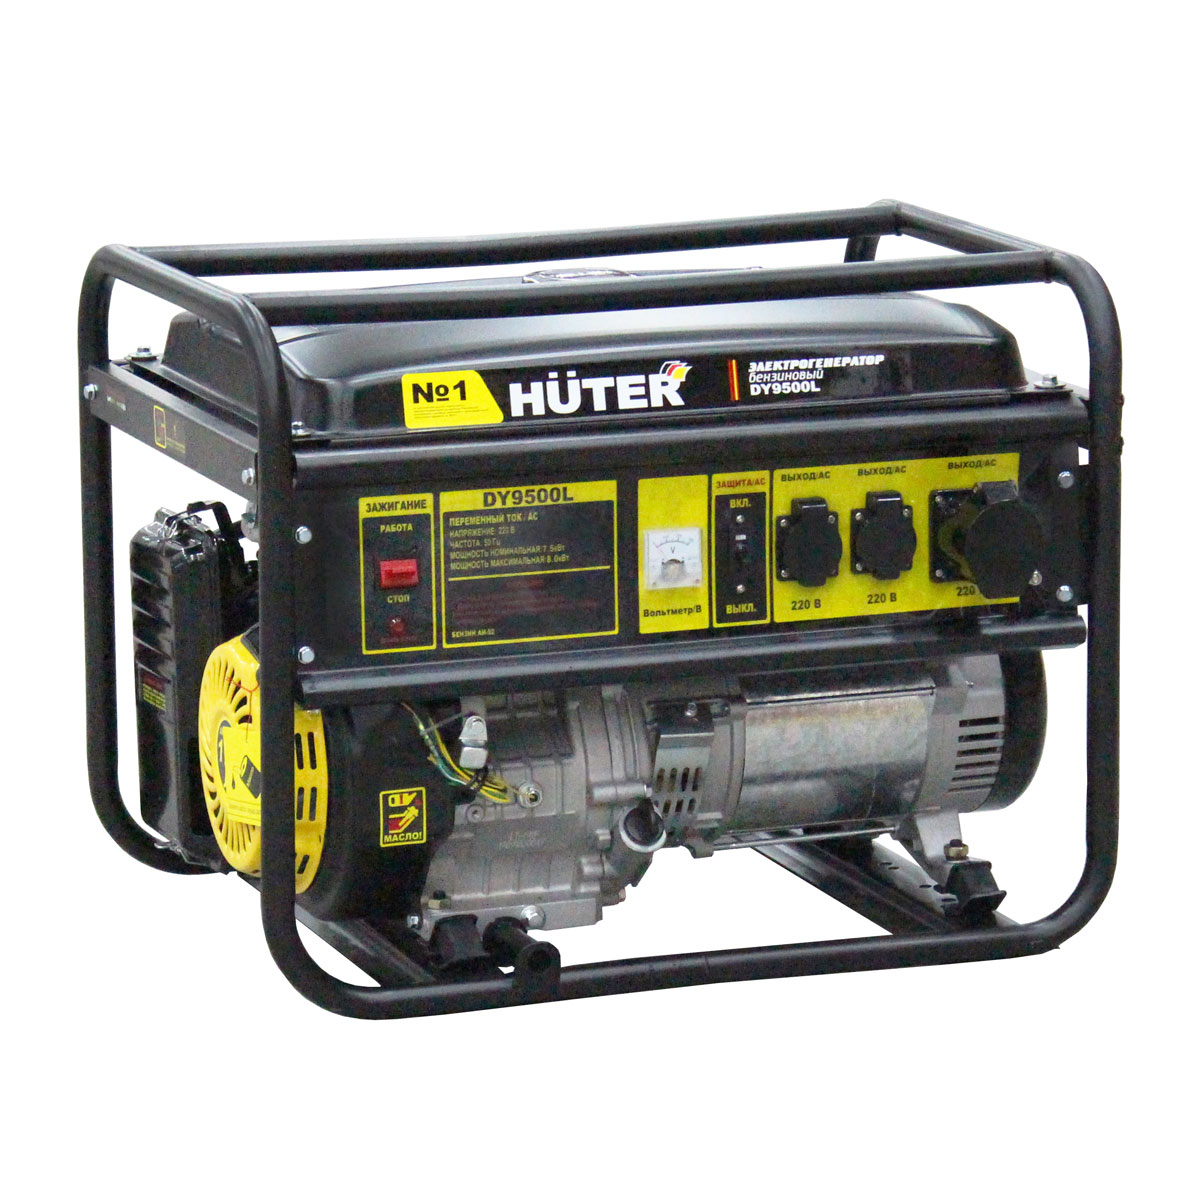  DY9500L Huter 7,5 кВт 220В  за 64590 рублей в .